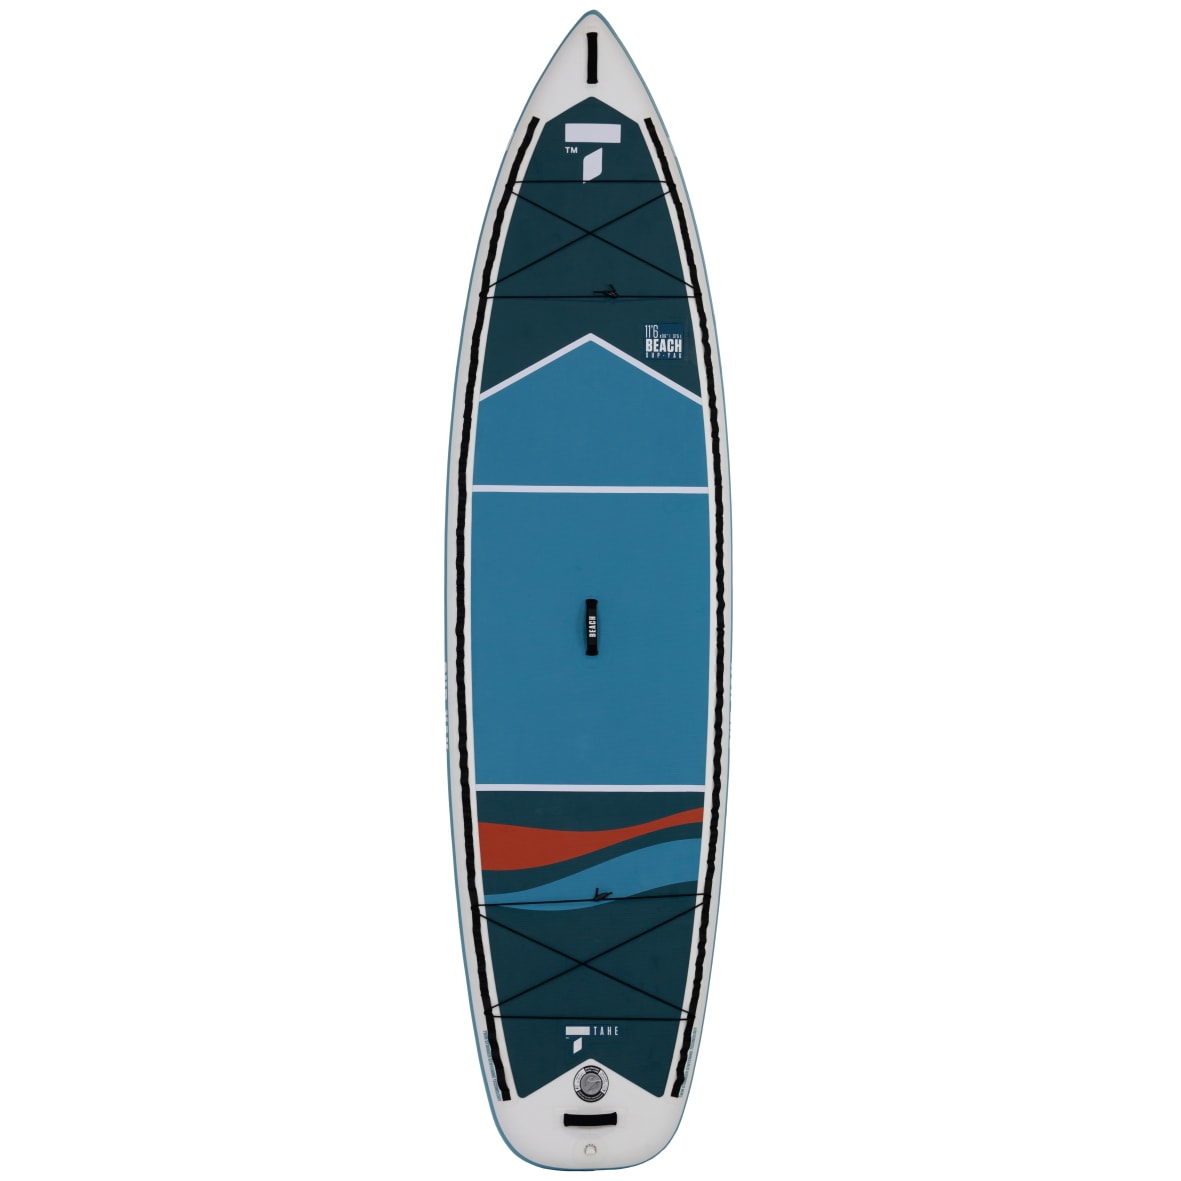 Inzopo Sangle élastique pour pagaie de kayak, sangle élastique pour kayak,  fixation canoë, planche de SUP, bagages et plus encore – 3 tailles au choix